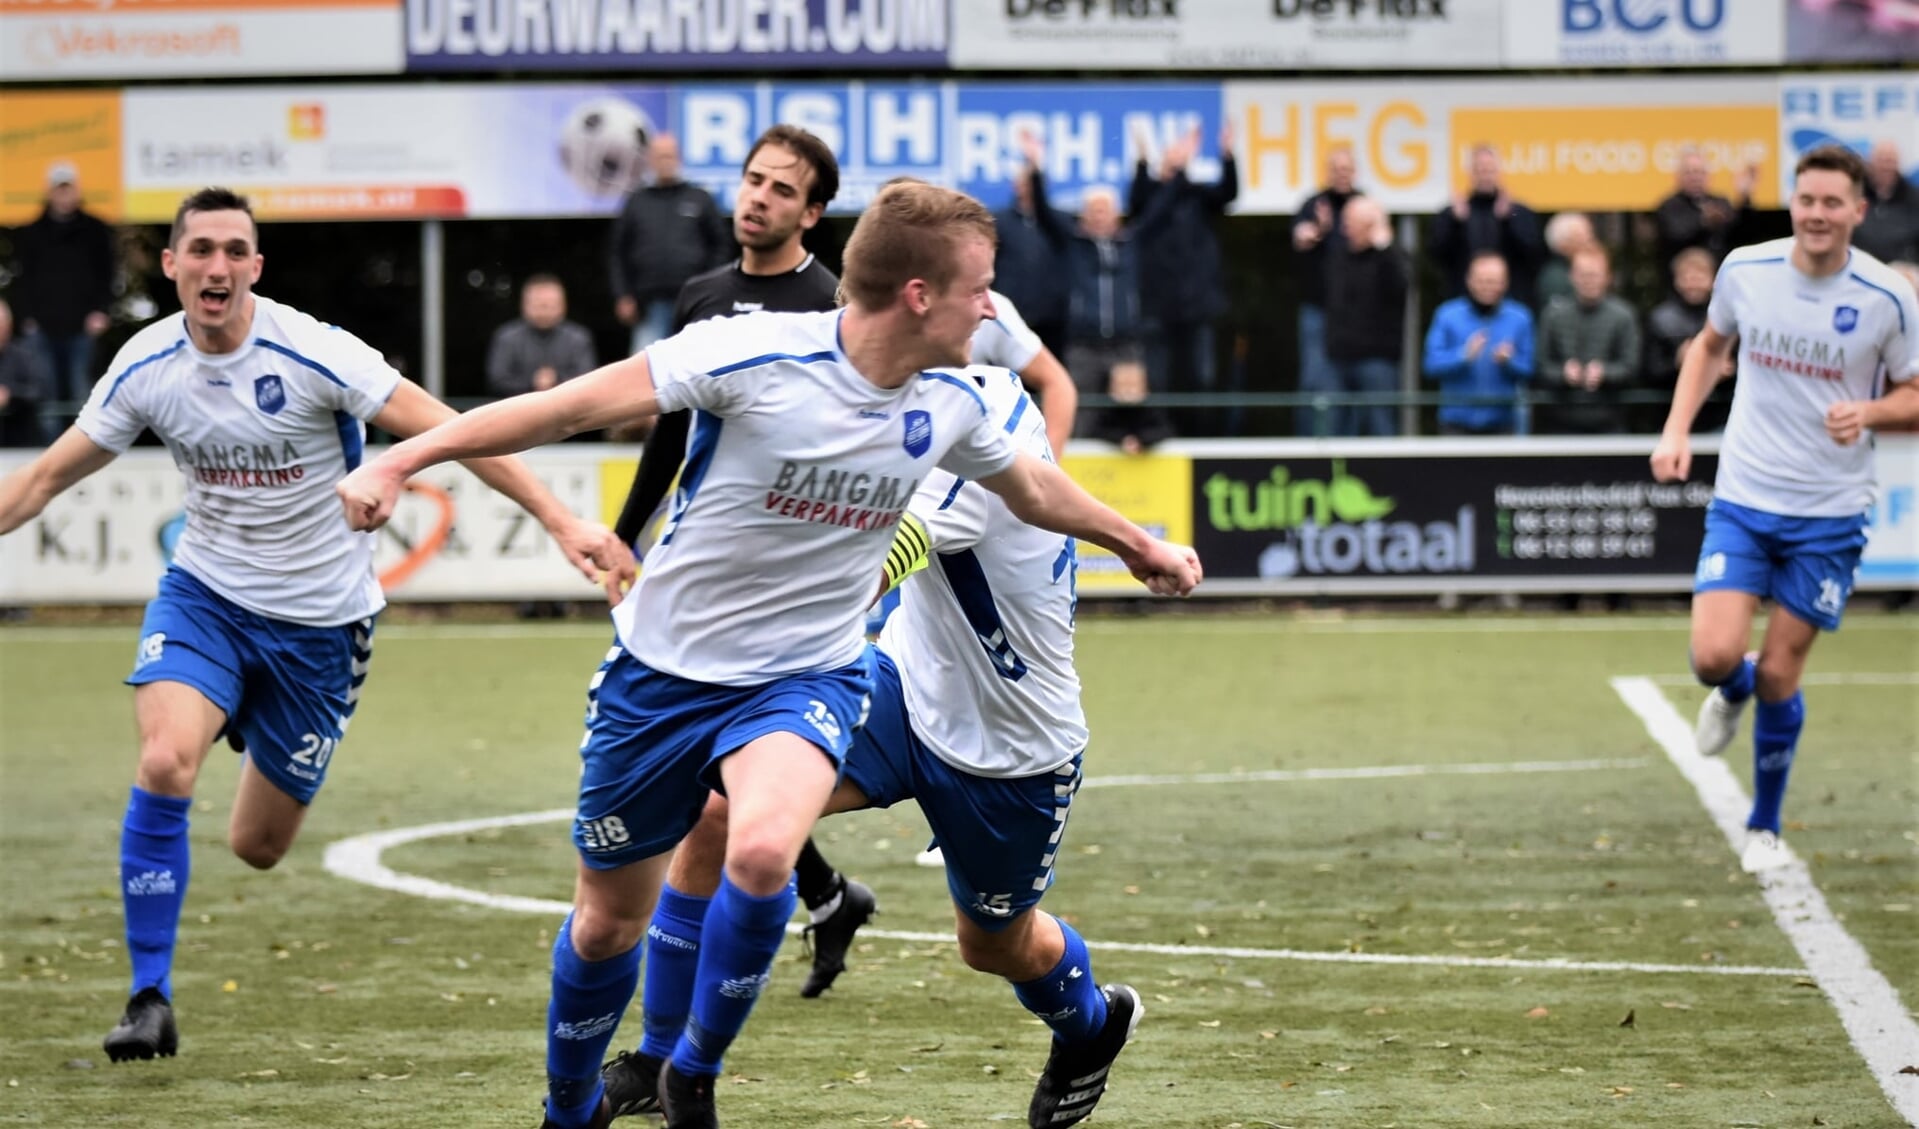 Dolle vreugde bij de spelers van Urk, als Iede Nentjes Urk in de thuiswedstrijd tegen HZVV op voorsprong heeft geschoten. (Archieffoto)